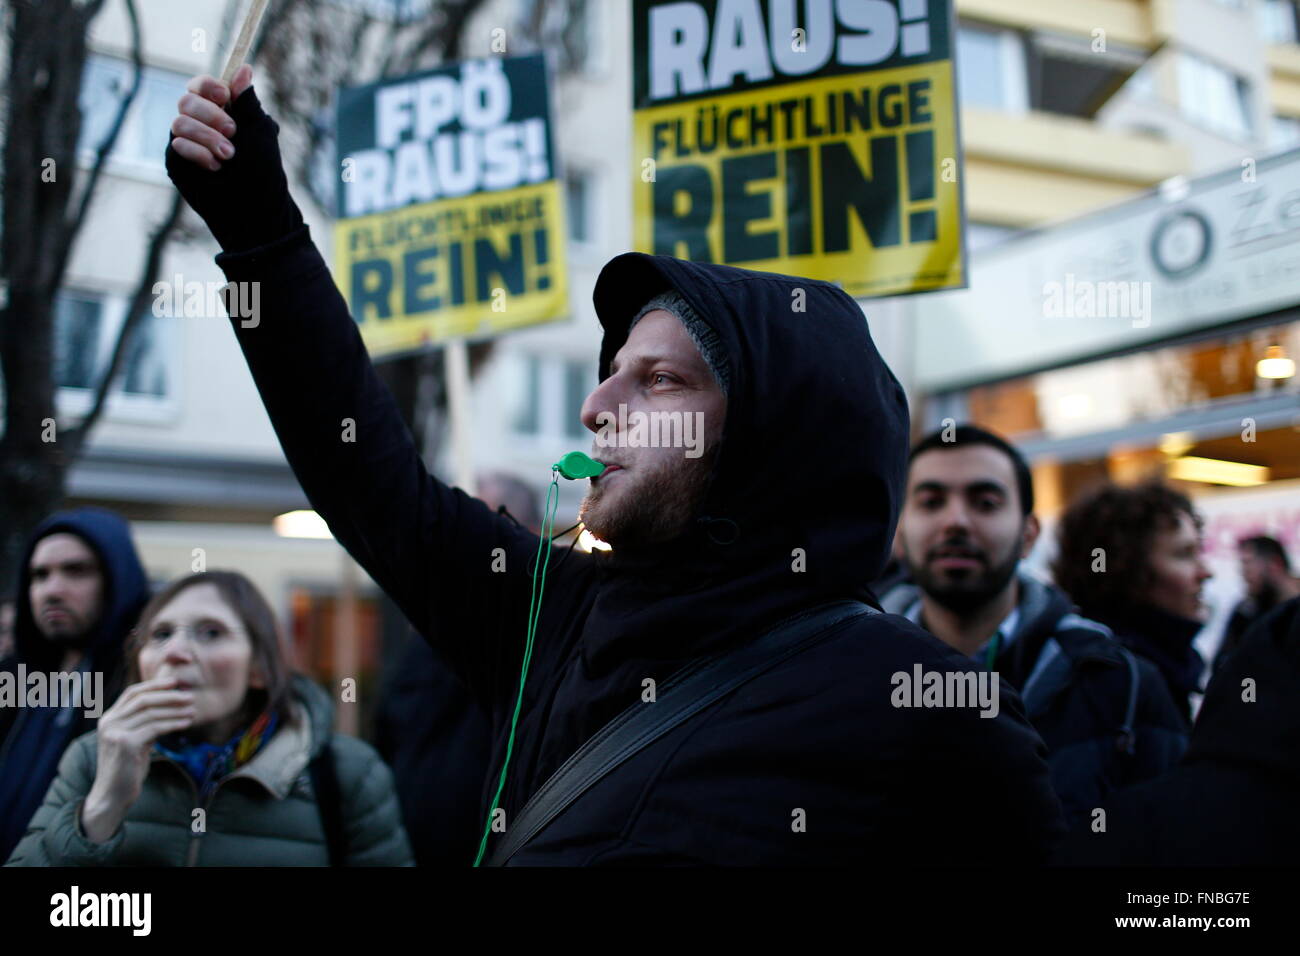 Vienna, Austria. Il 14 marzo 2016. I dimostranti protestano un rally che si terrà dall'estrema destra la libertà delle parti di Austria (FPÖ) in Liesing sobborgo di Vienna, Austria. Liesing è il sito di un rifugiato centro di alloggiamento, disegno rabbia da sostenitori del anti-immigrati FPÖ. Credito: David Cliff/Alamy Live News Foto Stock